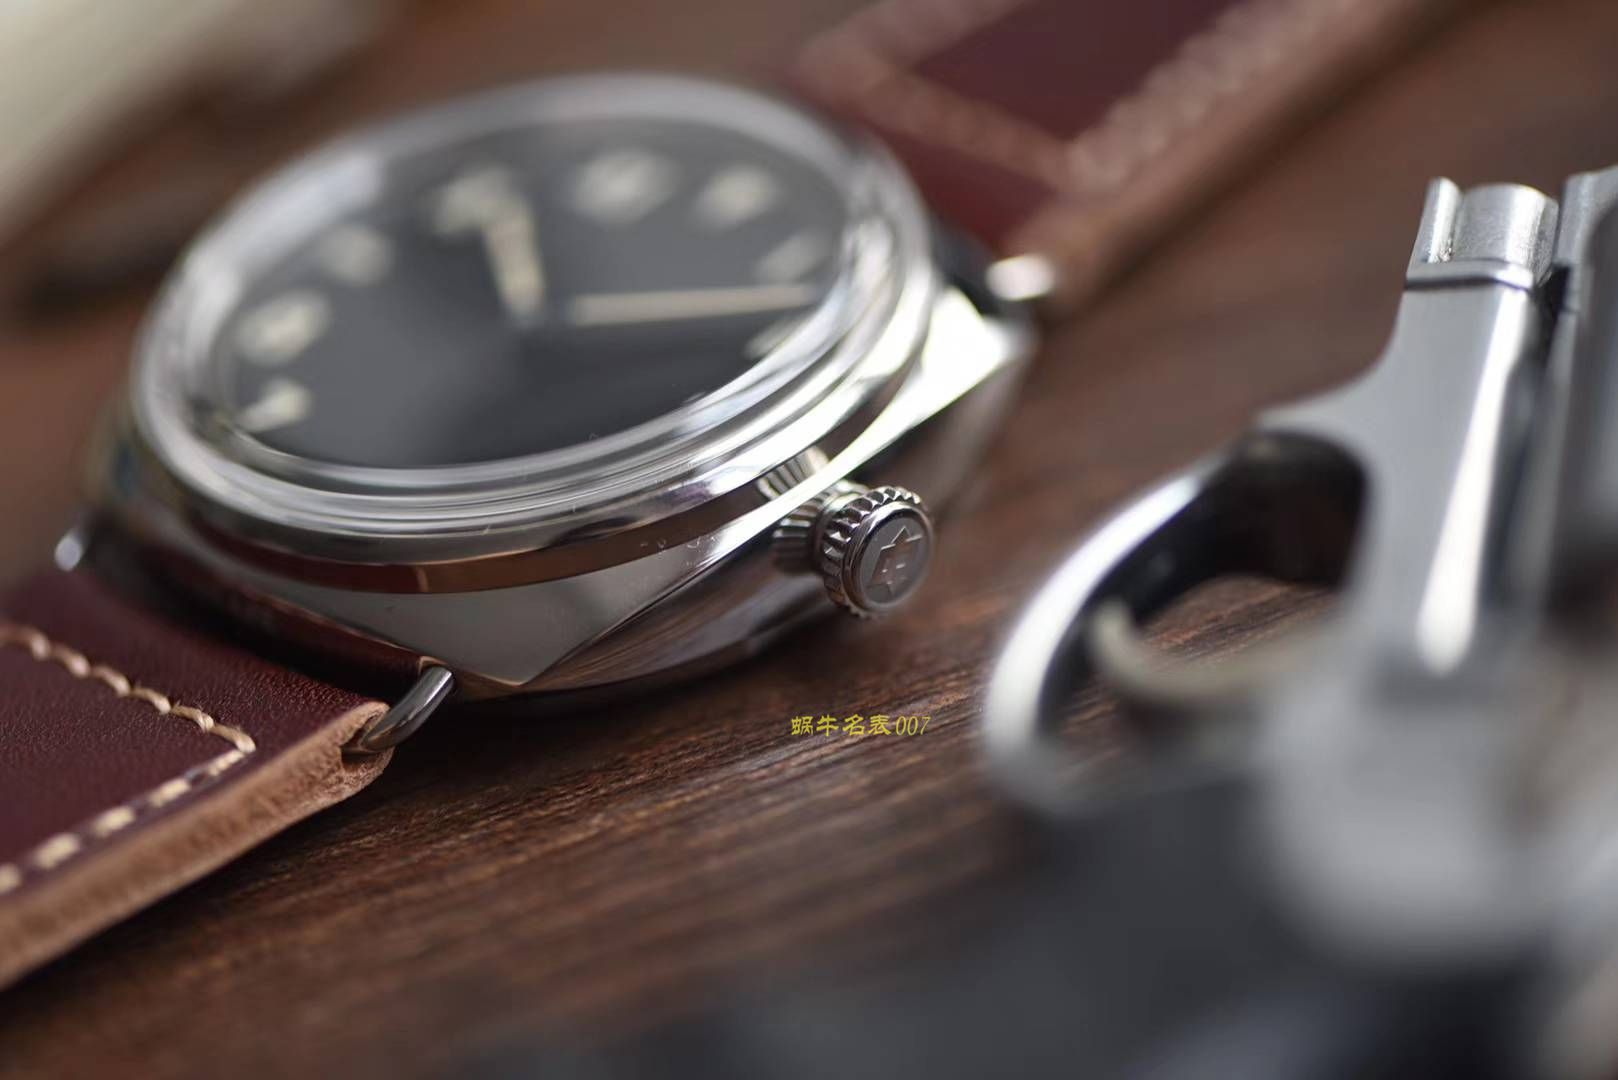 沛纳海LUMINOR系列PAM00488腕表【SF一比一顶级复刻手表】 